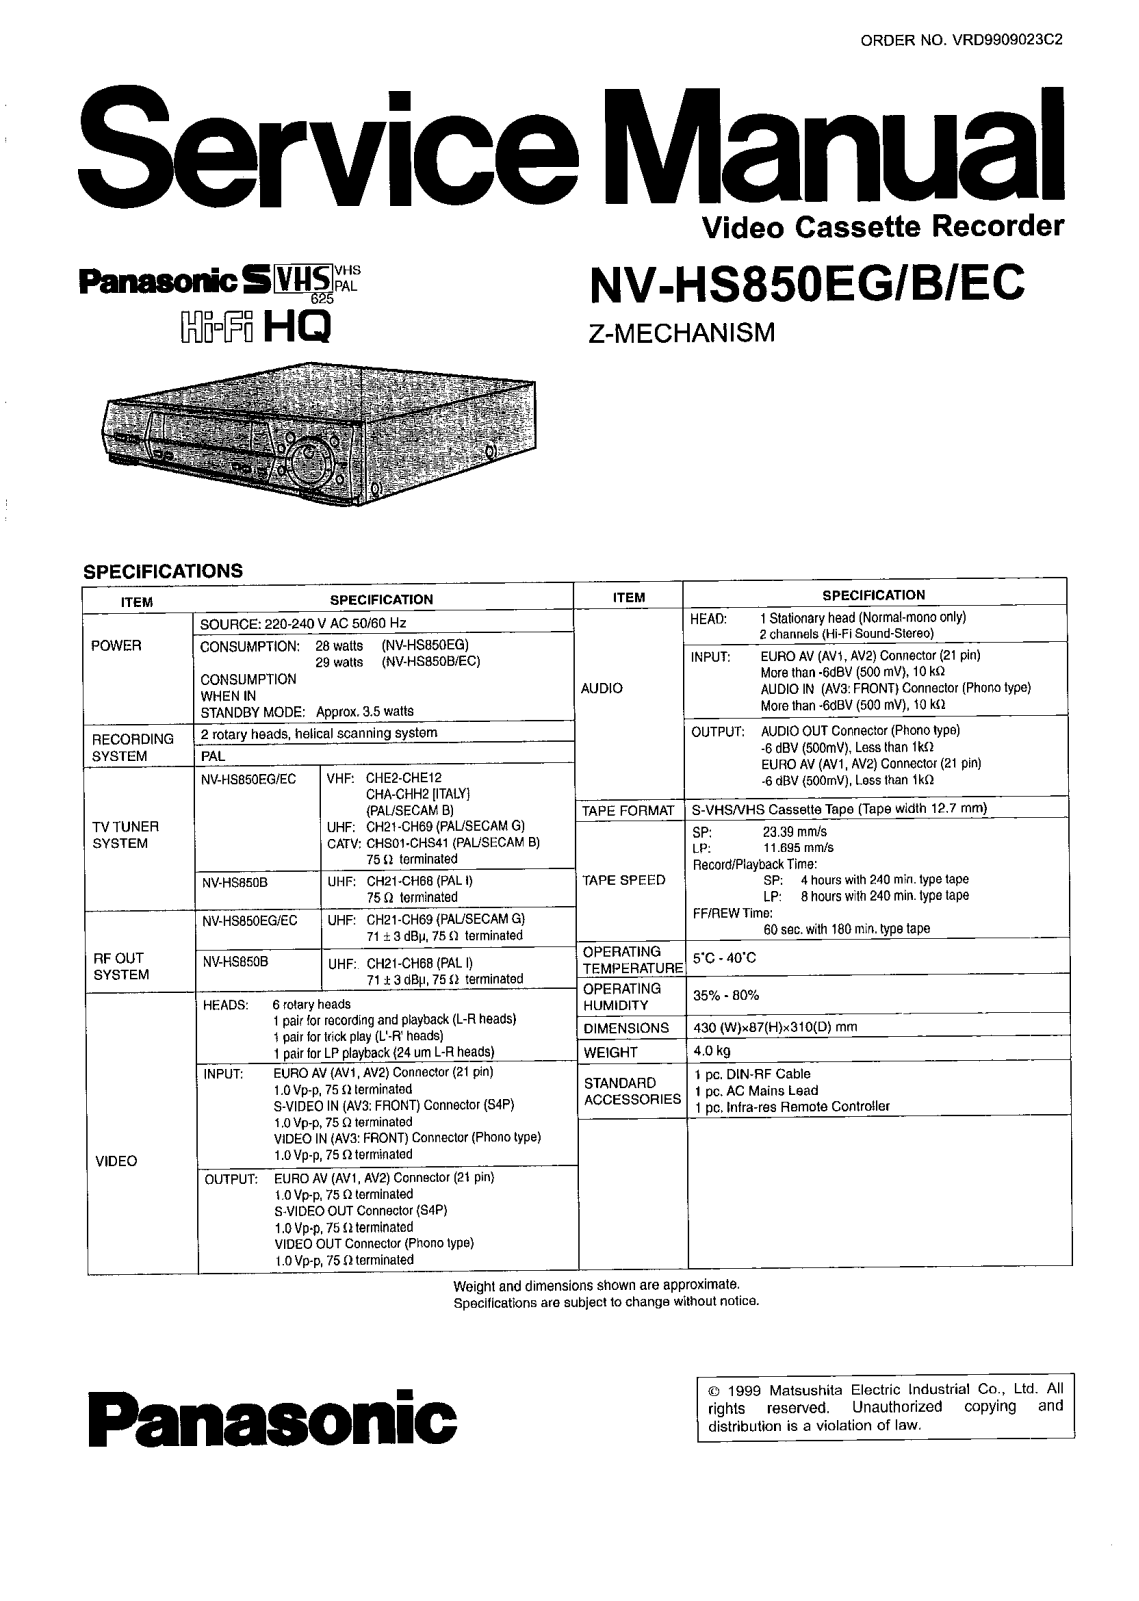 PANASONIC NV-HS850EG Service Manual